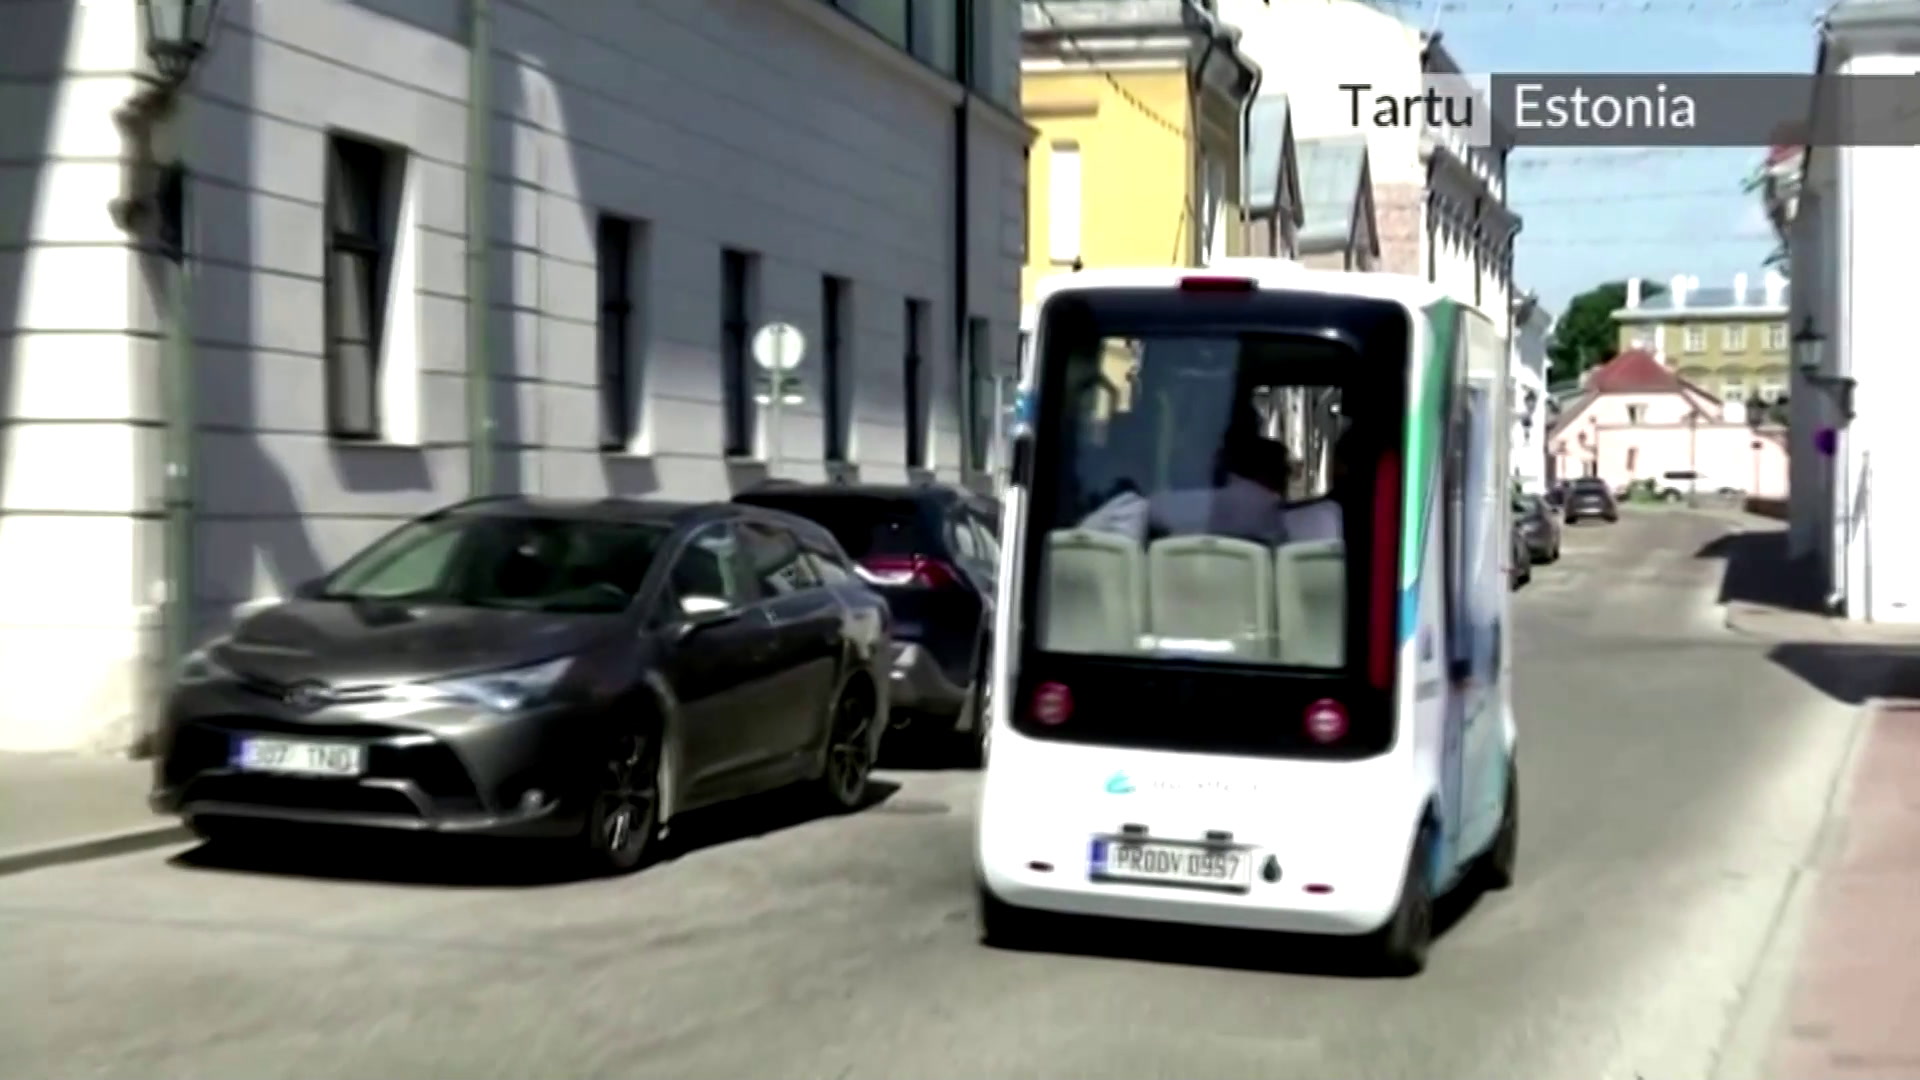 Un autobús autónomo propulsado por hidrógeno, el primer vehículo de este tipo en el mundo según sus desarrolladores, comenzó a circular por las carreteras de la ciudad universitaria de Tartu en Estonia este lunes 5 de julio del 2021. Video: Reuters